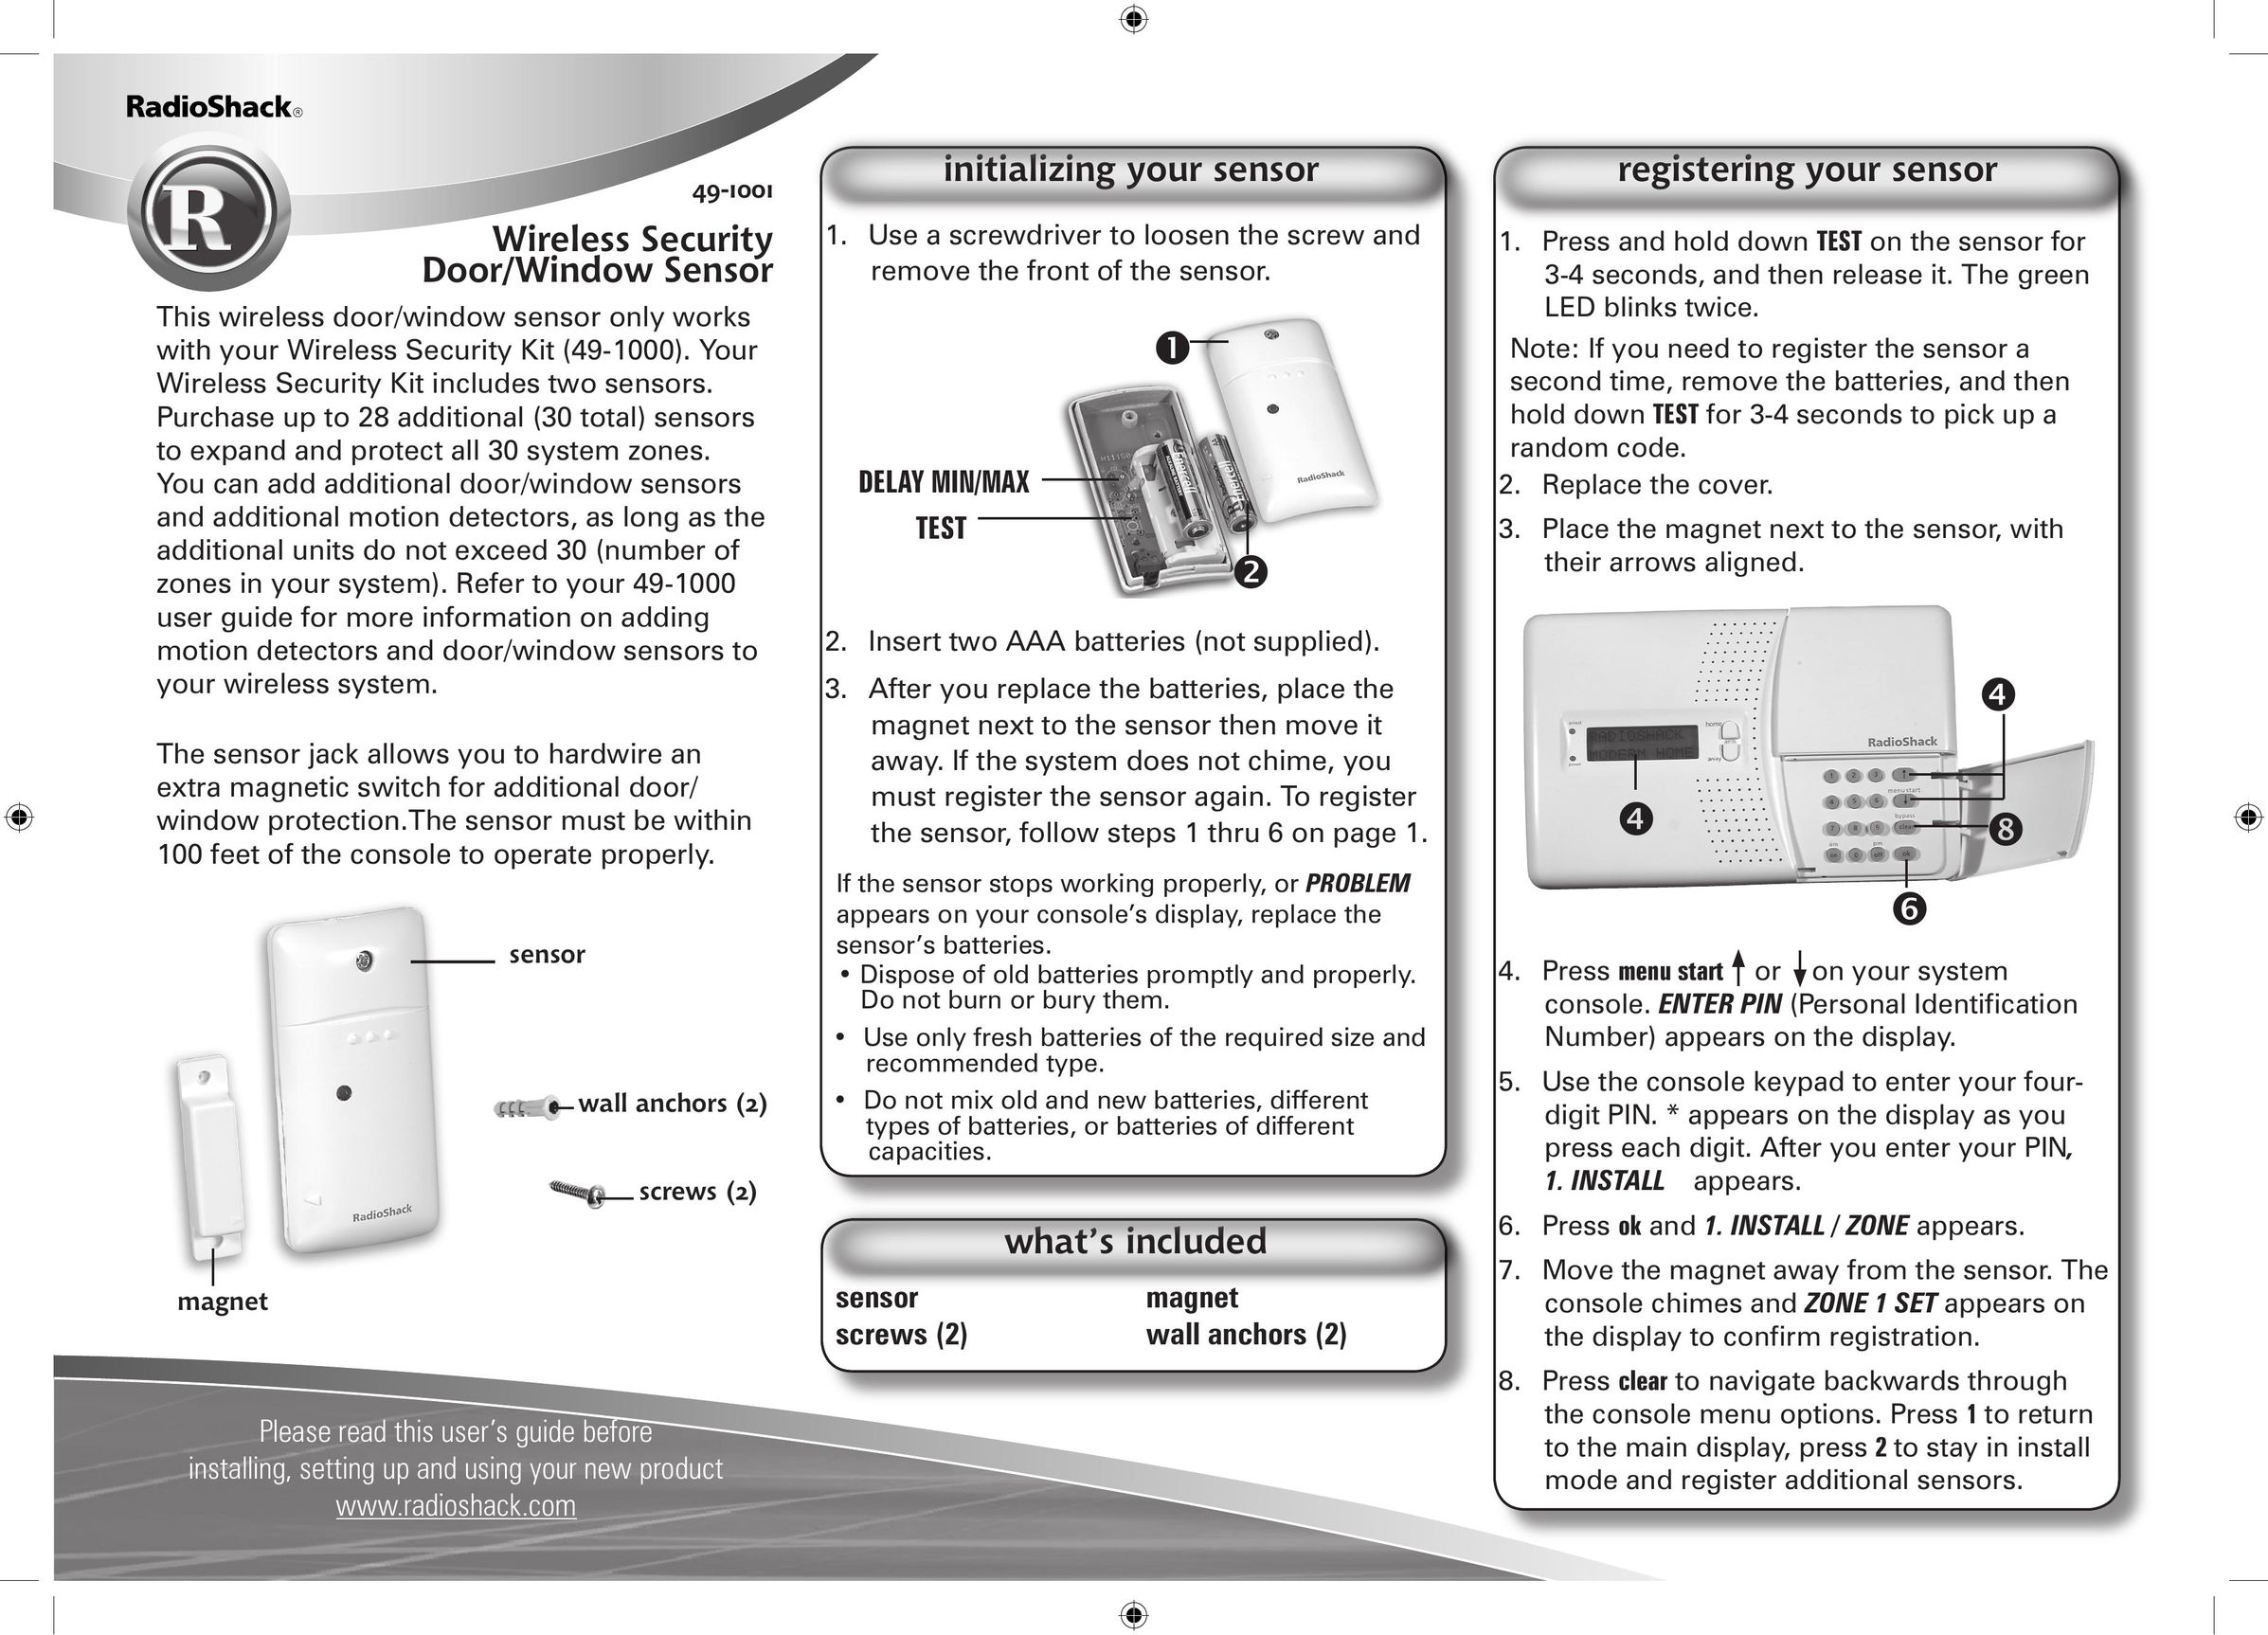 Radio Shack 49-1001 Stud Sensor User Manual